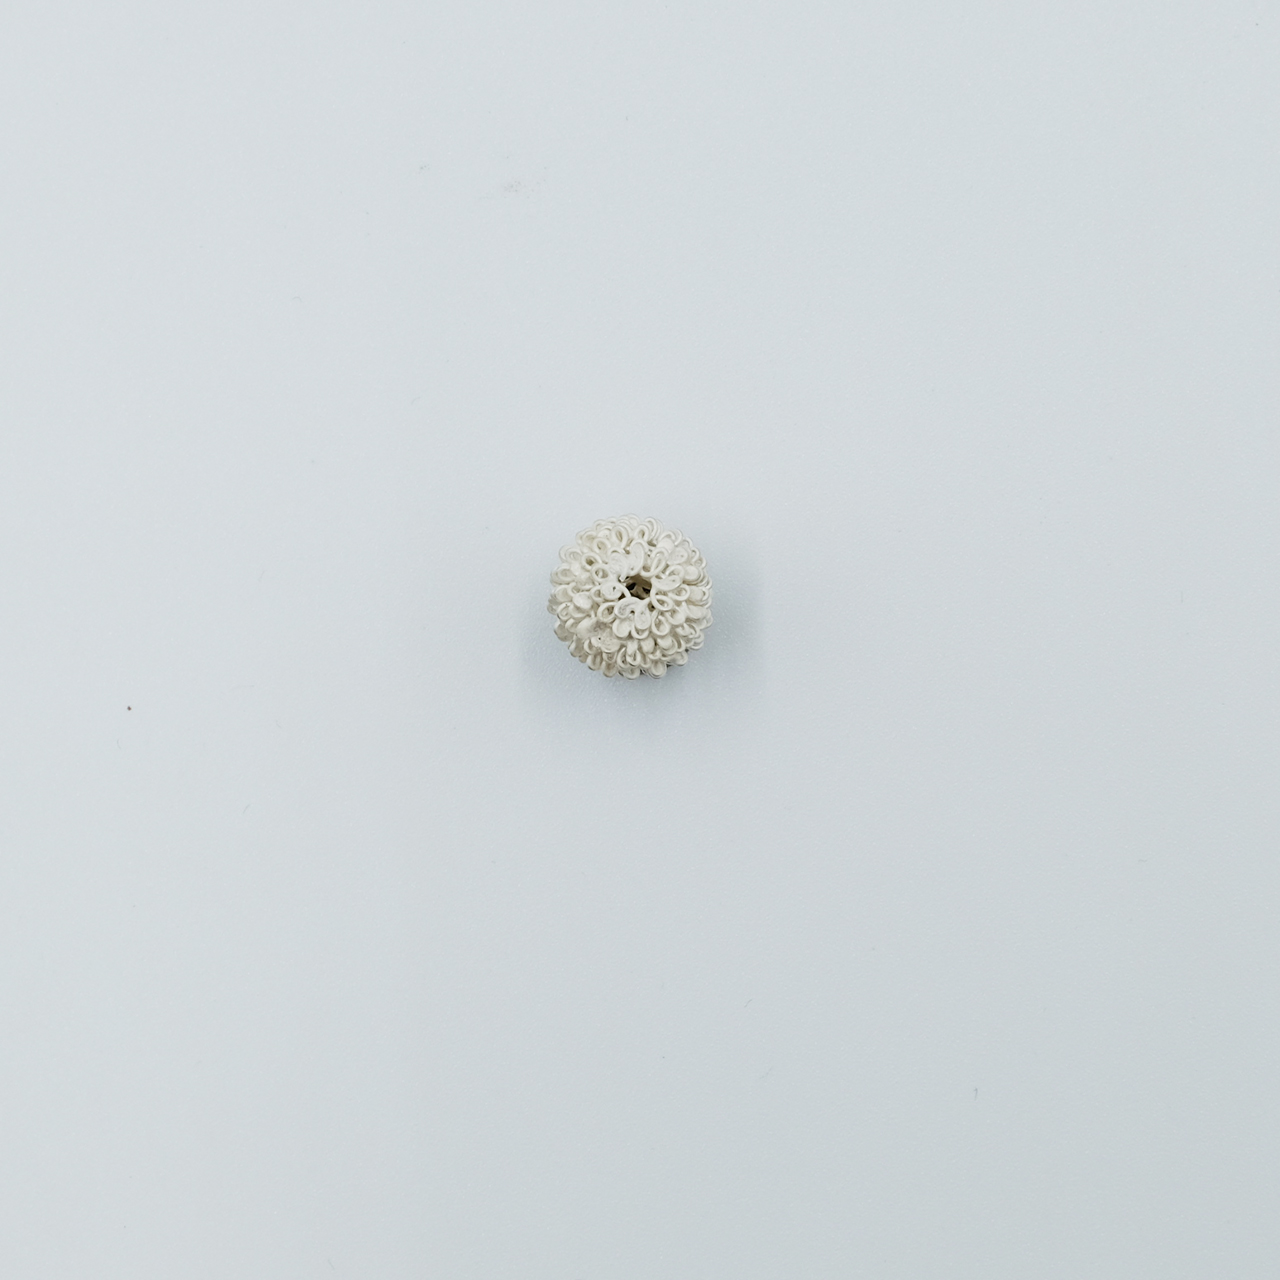 2 Small pin by Sayumi Yokouchi